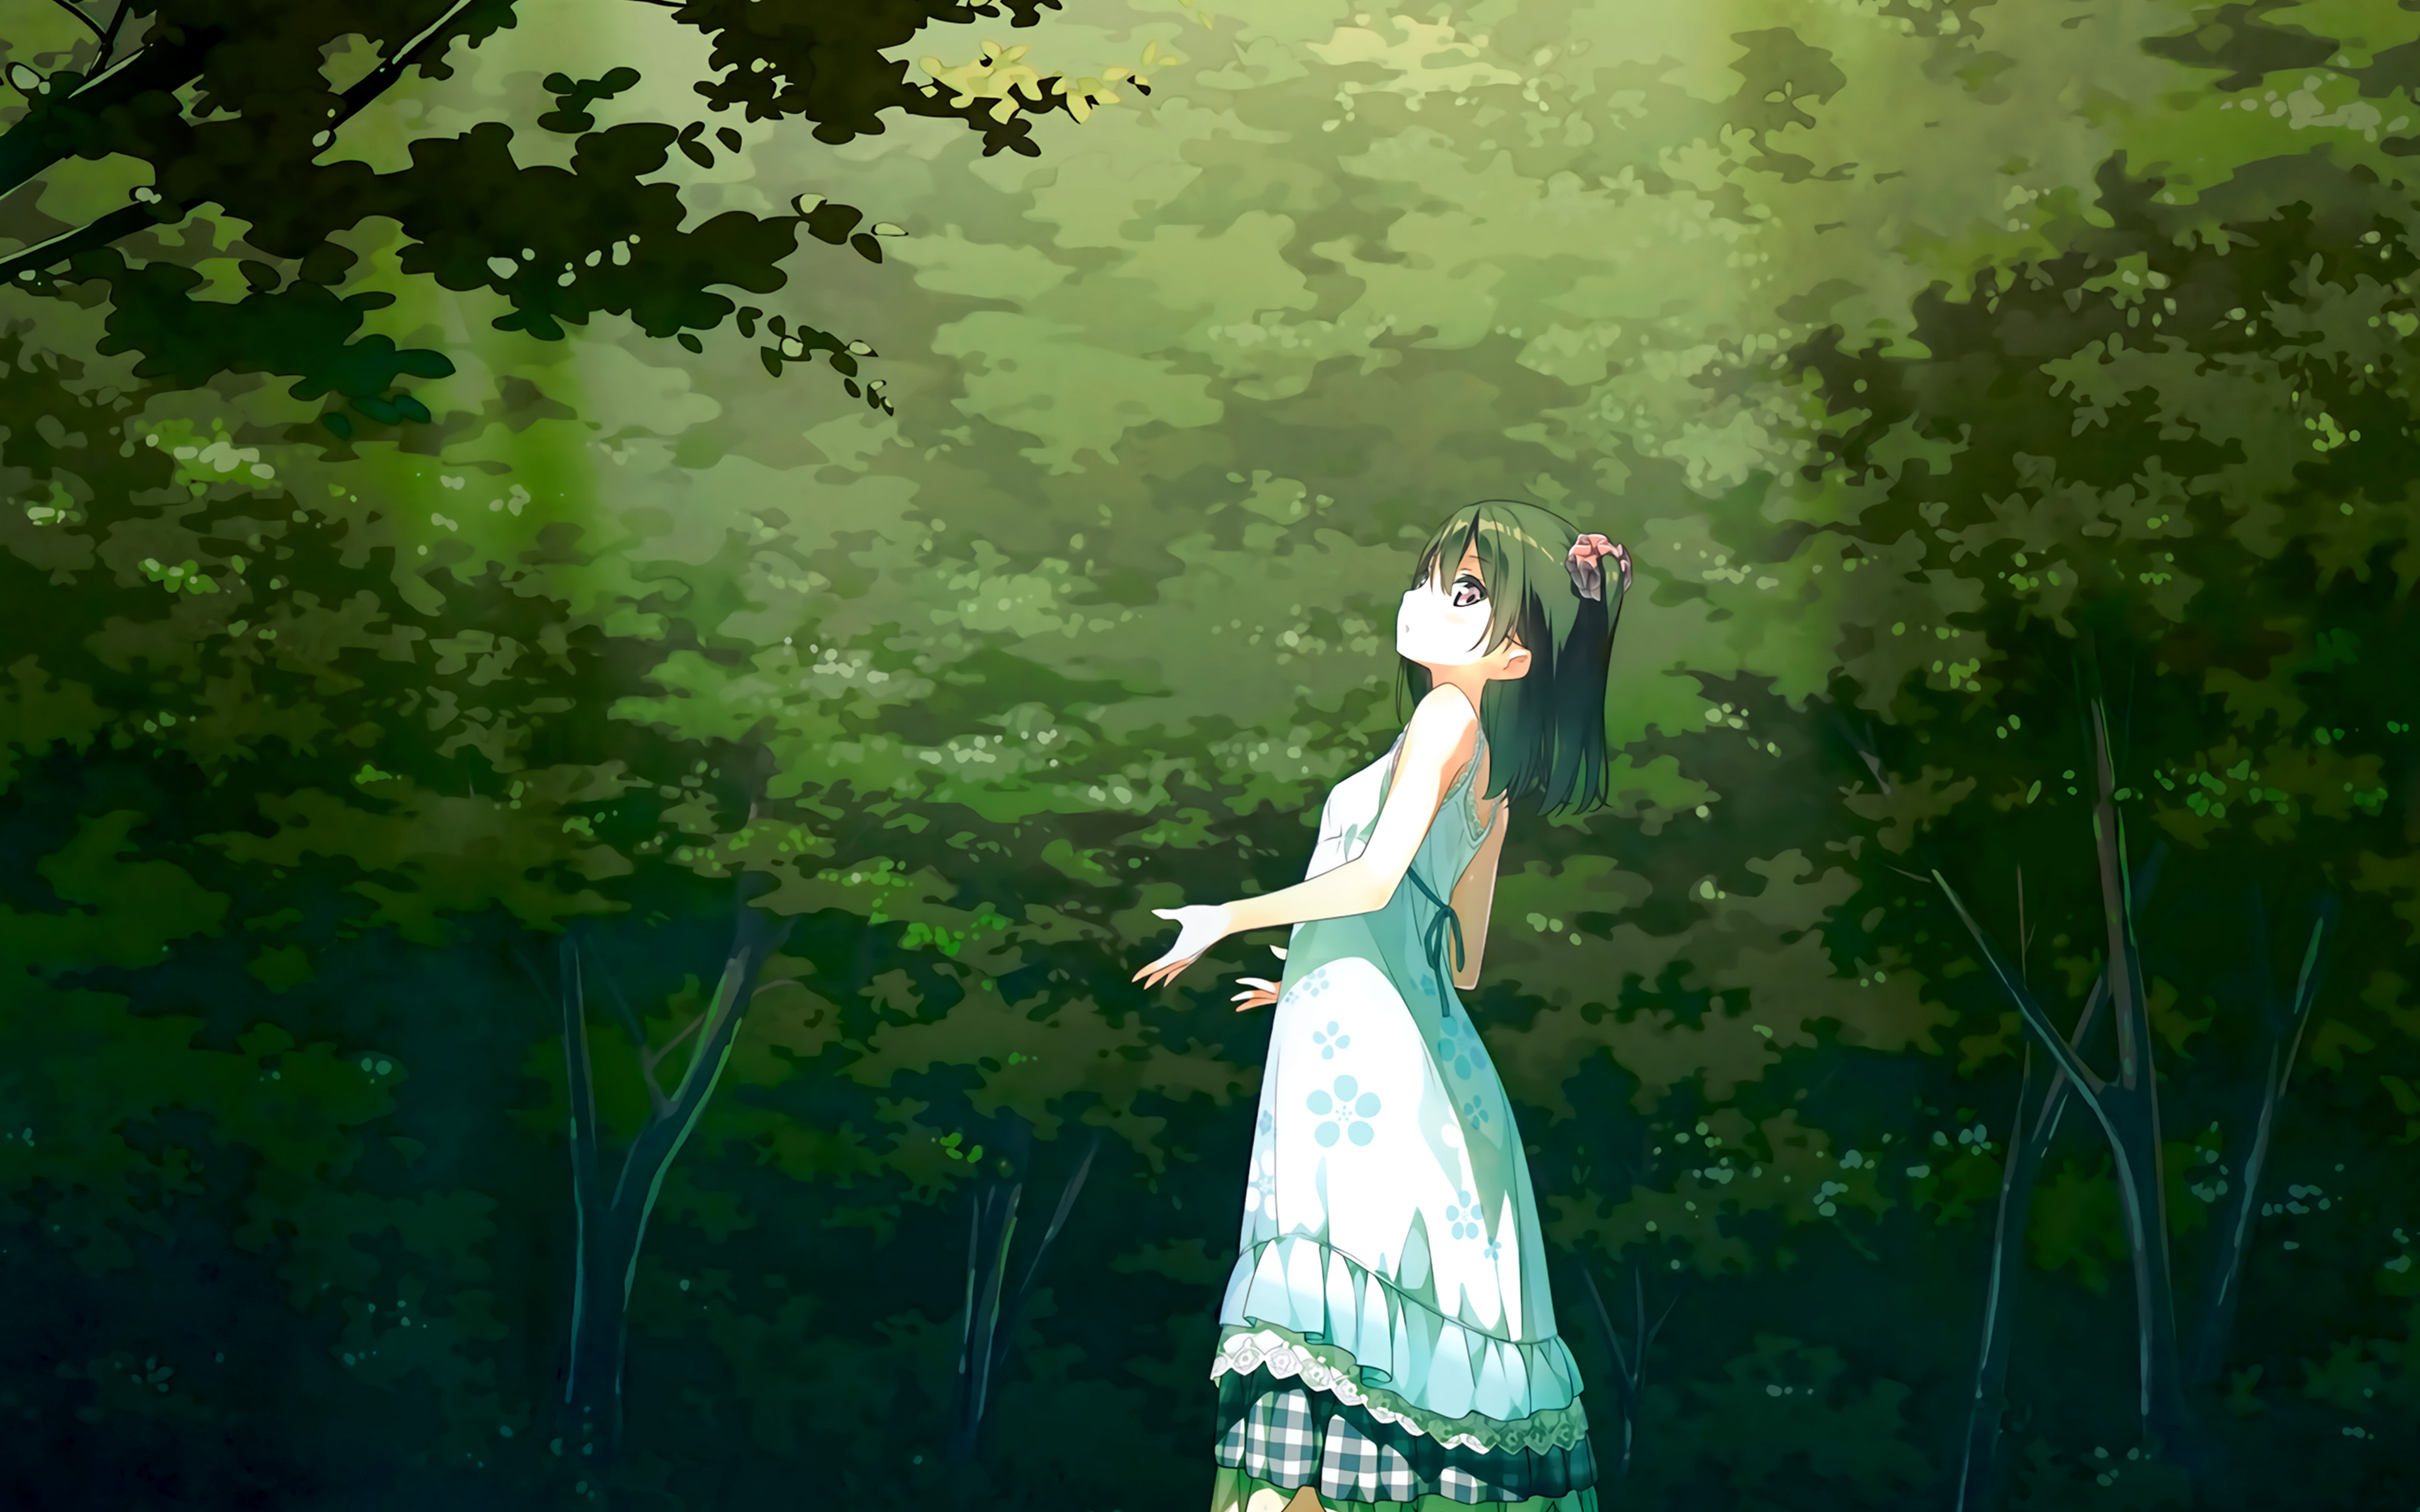 Tải ngay 50 anime background green đẹp nhất